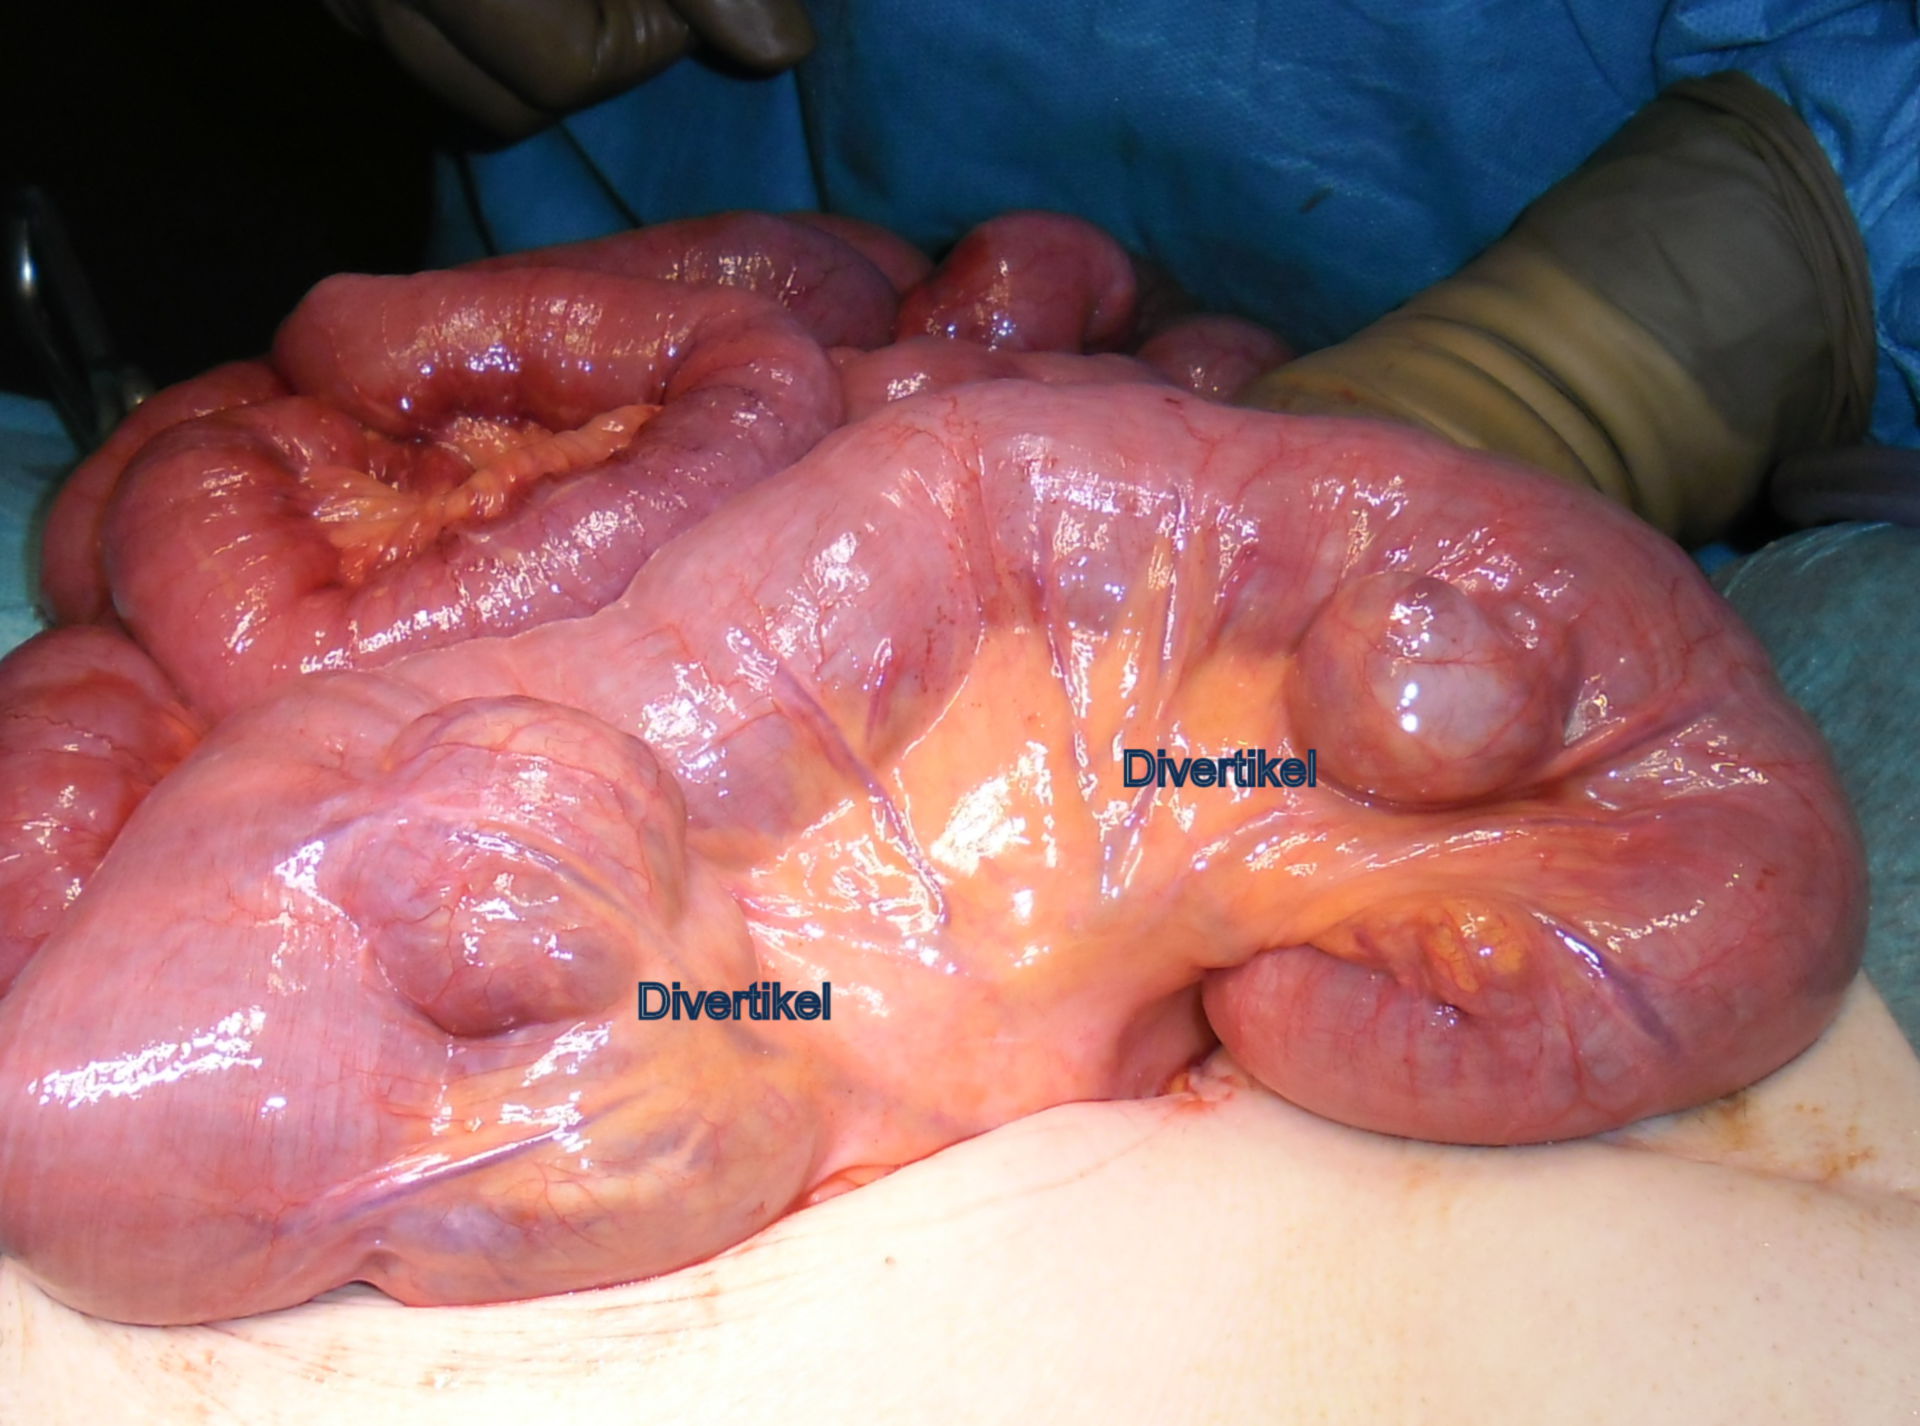 Small intestine diverticula 2